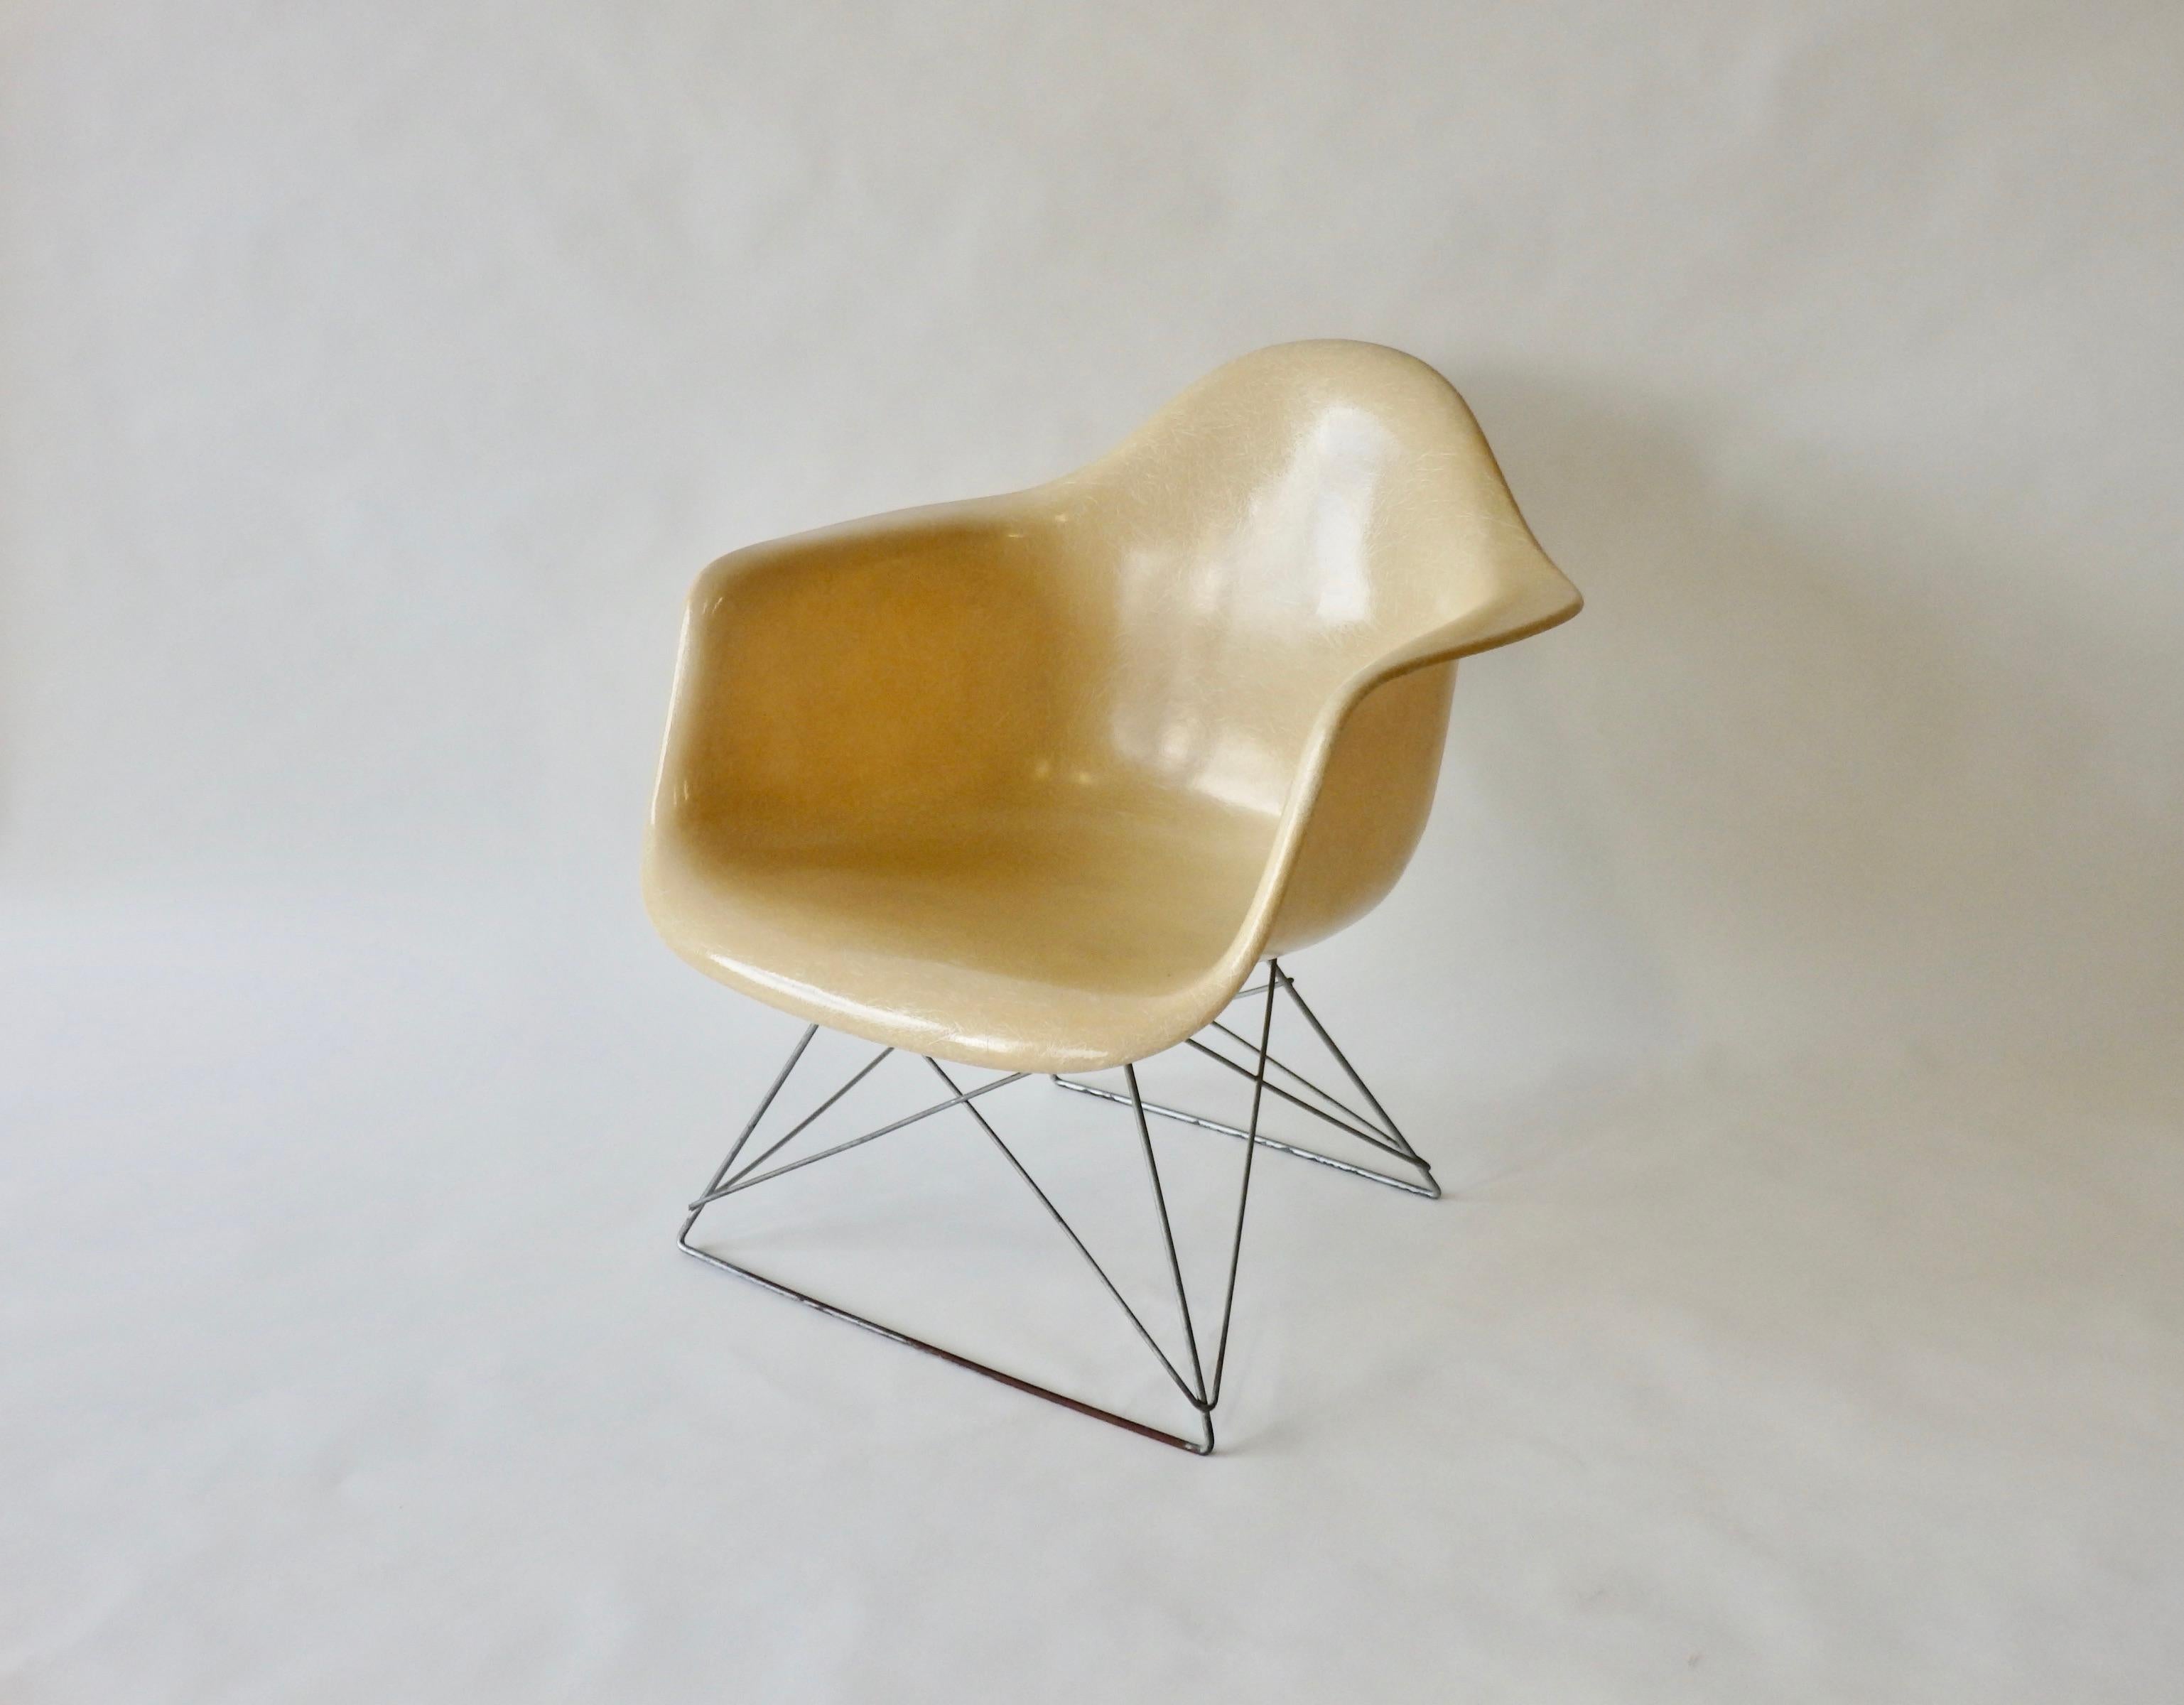 De la série de chaises en fibre de verre développée par Charles et Ray Eames immédiatement après la Seconde Guerre mondiale. Largement distribué par Herman Miller. Cette chaise à bras bas (LAR) a une base en zinc et des bras en fibre de verre blanc